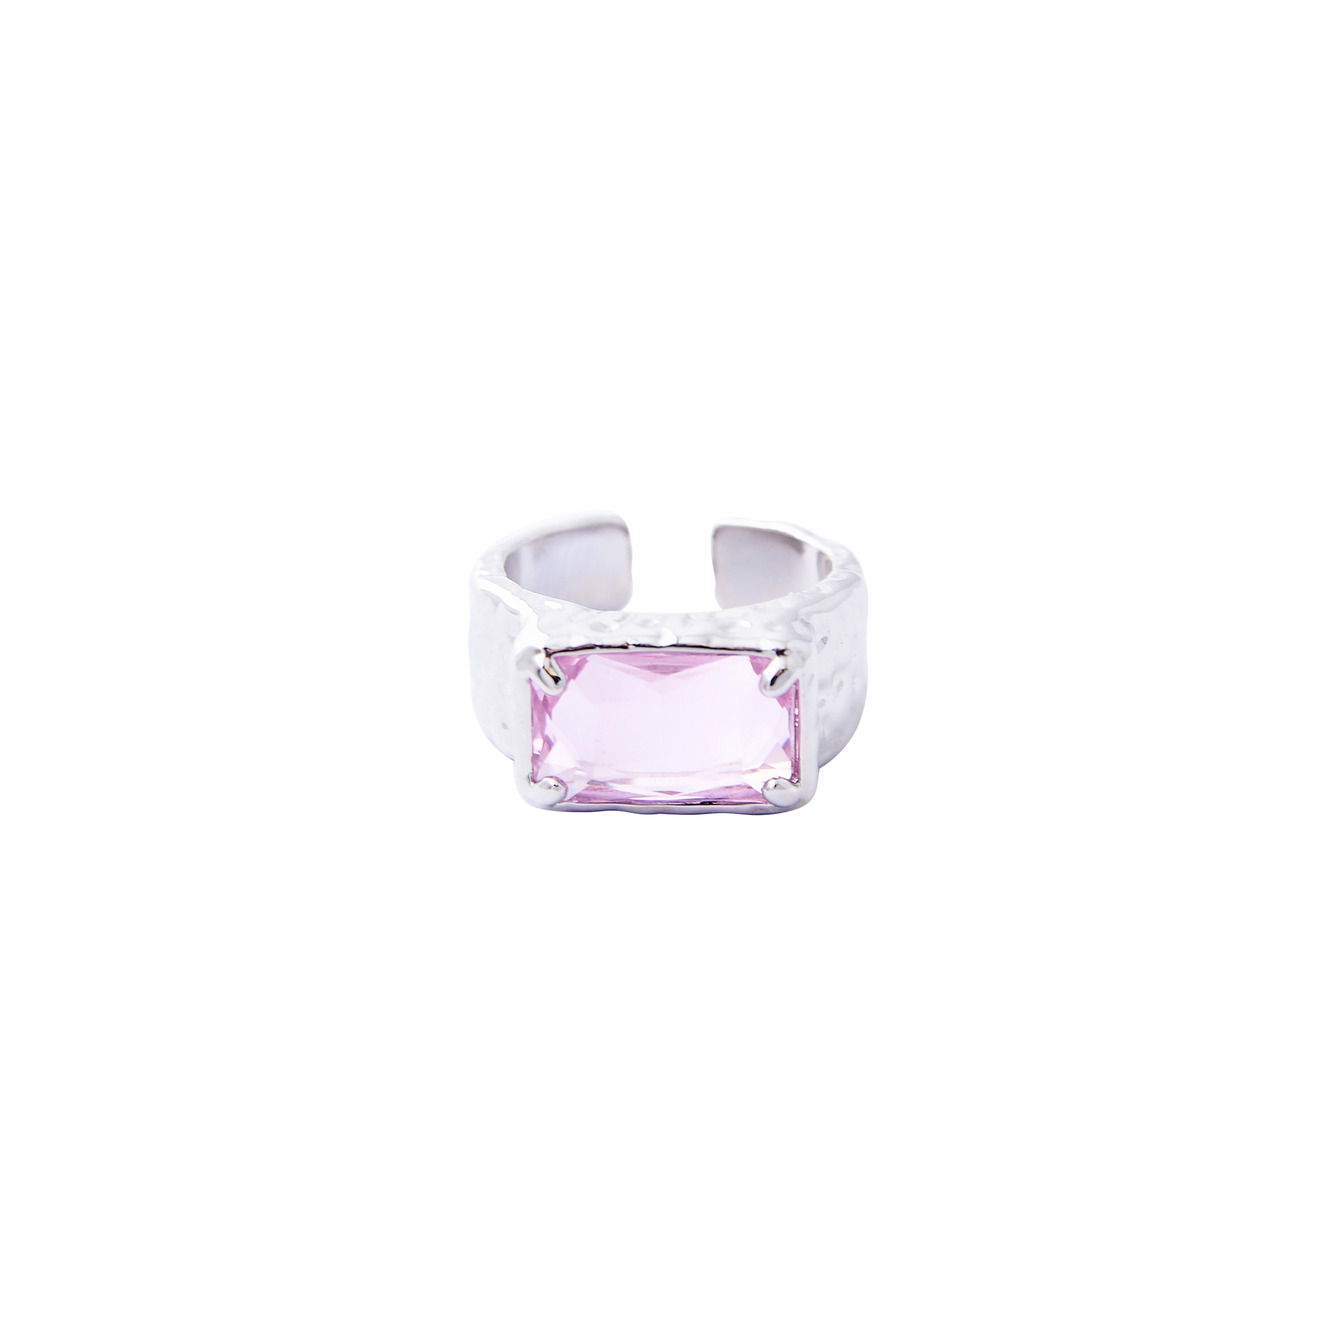 Herald Percy Серебристое кольцо с крупным розовым кристаллом herald percy красное кольцо калиграфия с кристаллом